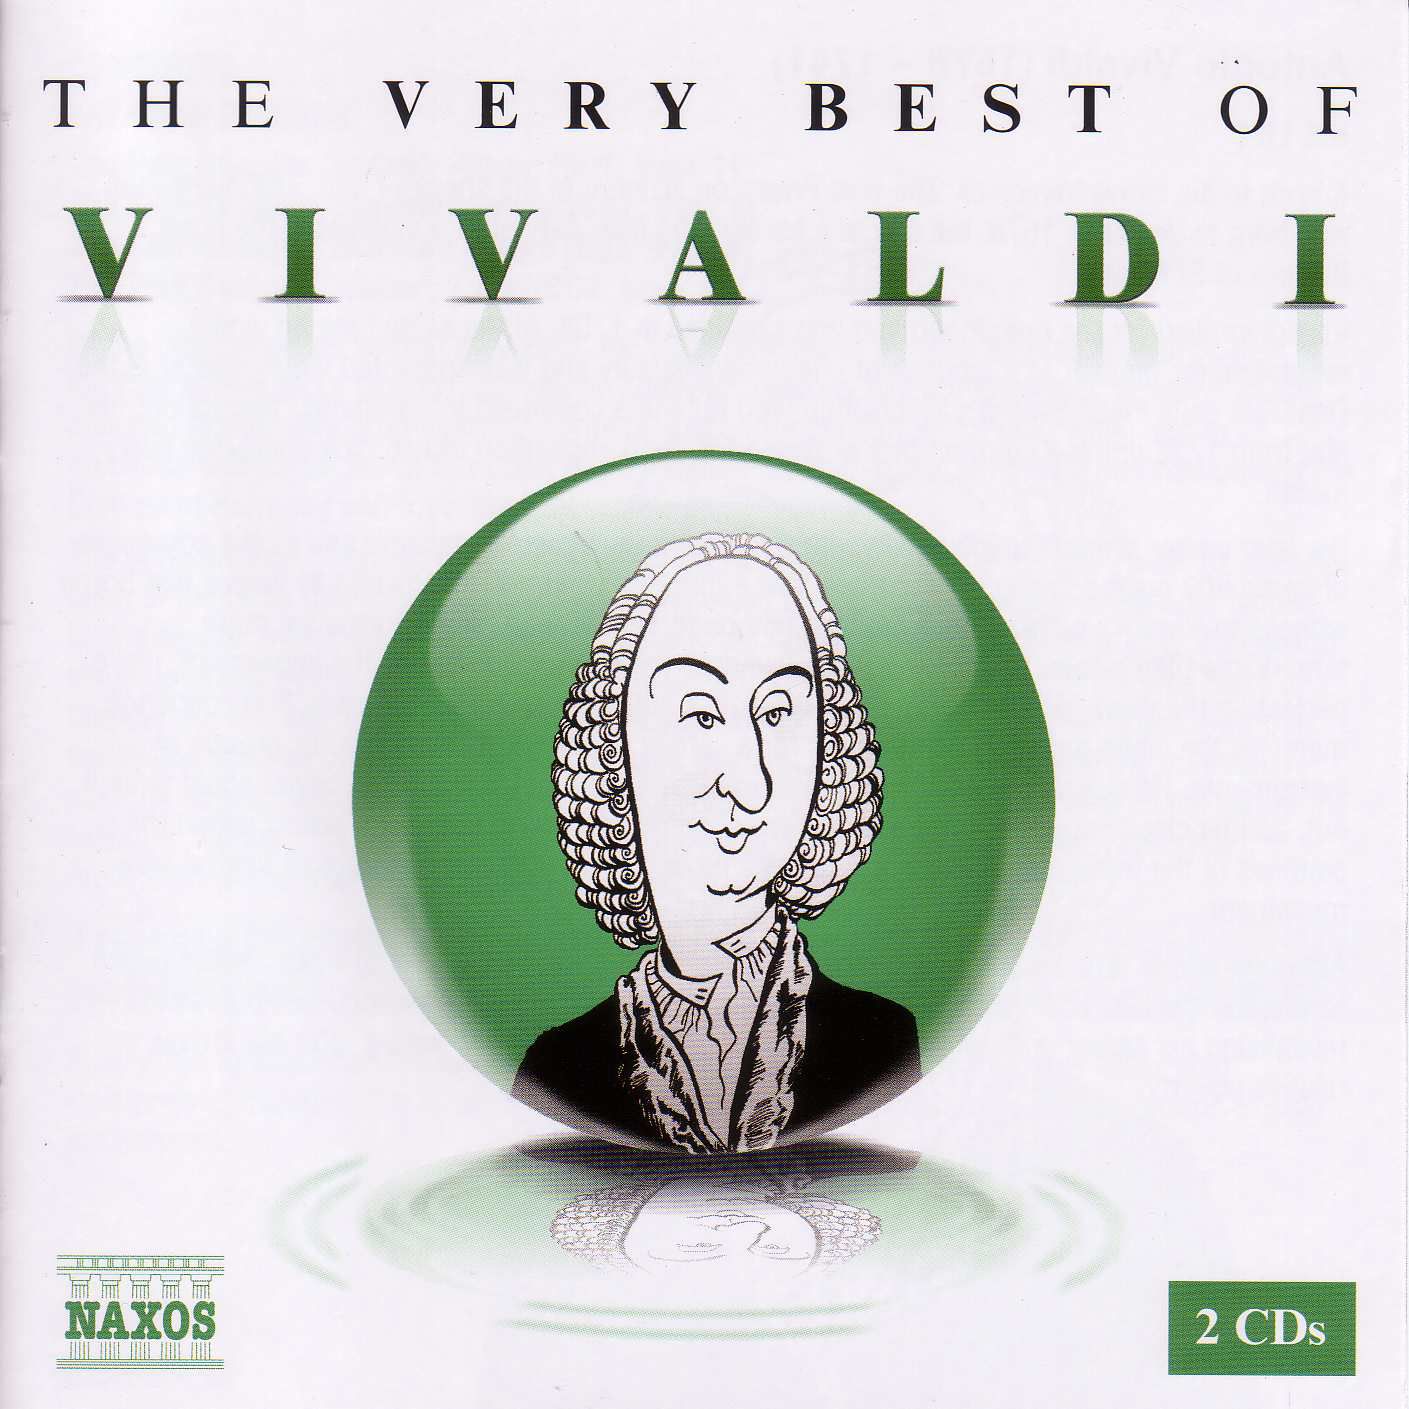 Вивальди для двух. Вивальди CD 2004. Antonio Vivaldi альбомы. Вивальди картинки. Vivaldi Spring.